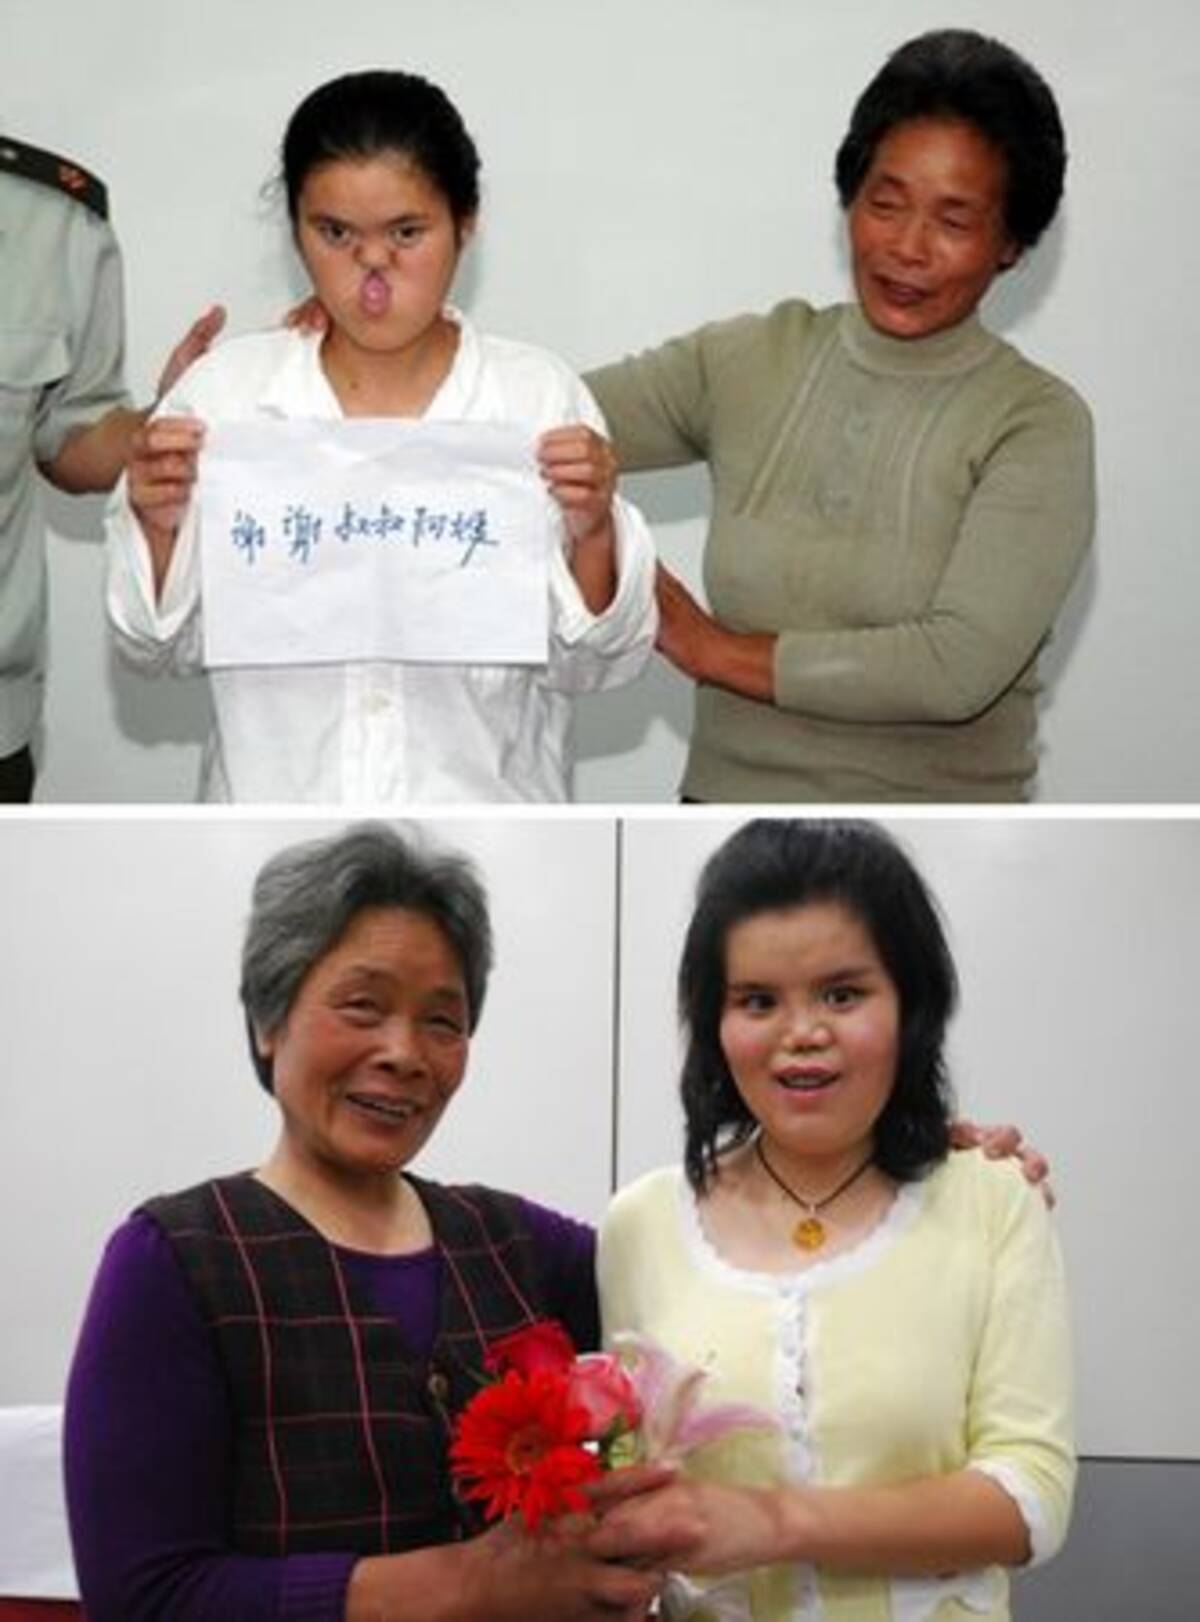 顔面の奇形の整形に成功 22歳の女性が喜びの声 中国 10年5月18日 エキサイトニュース